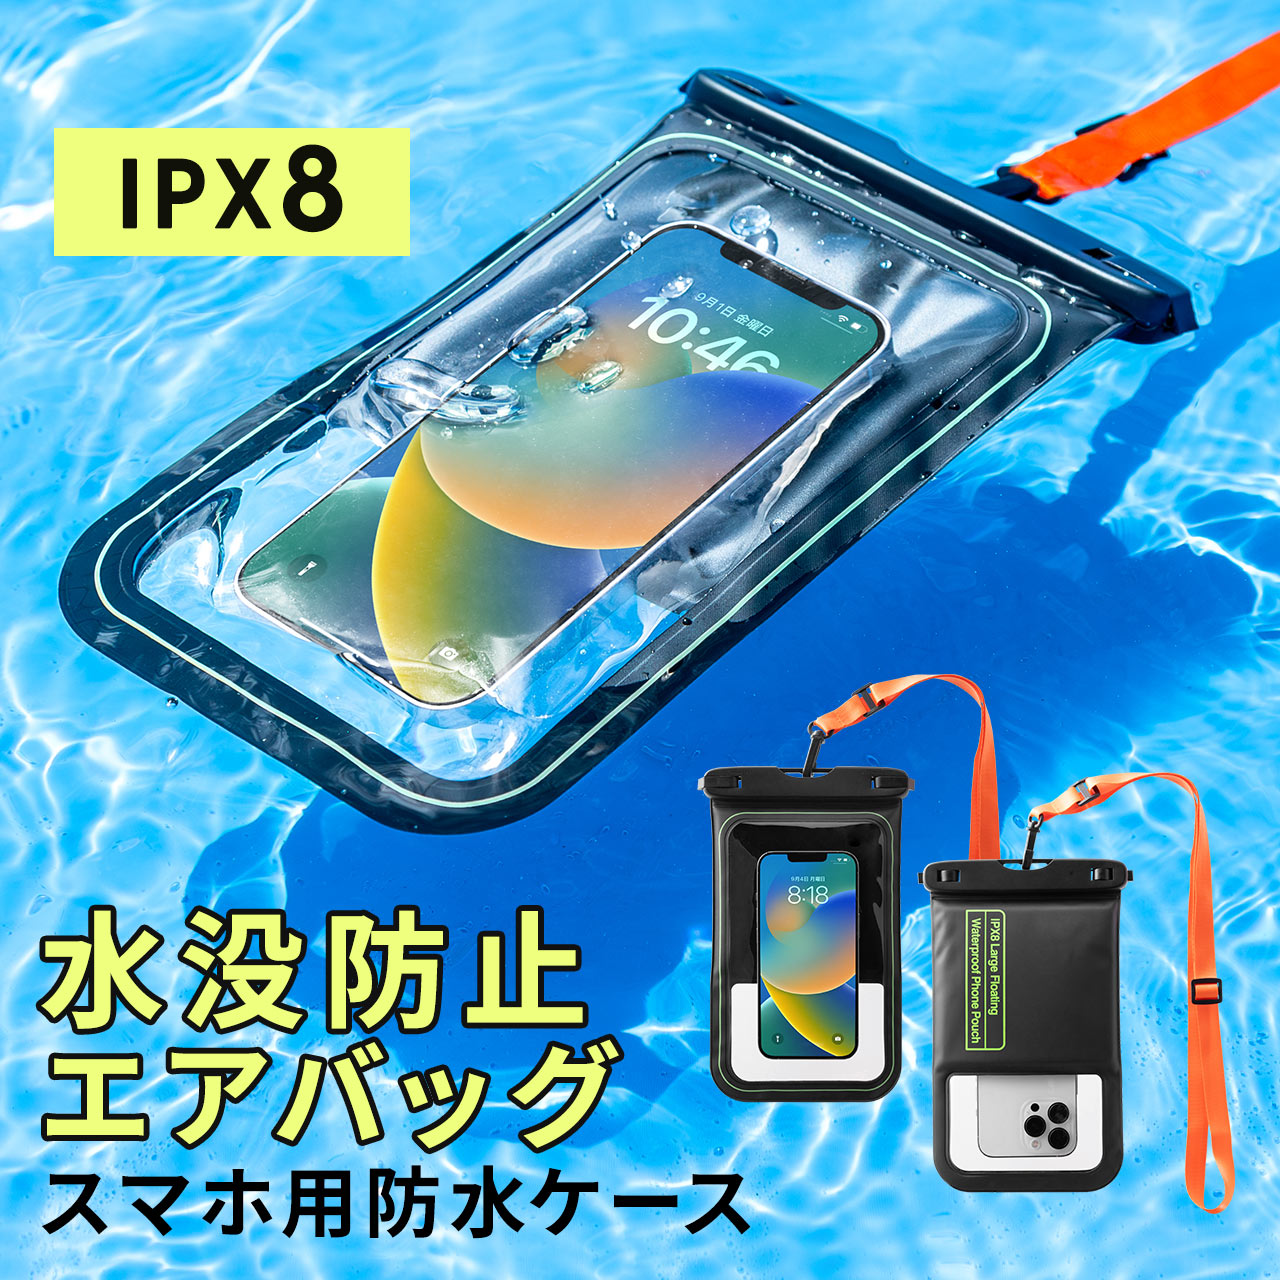 スマホ 防水ケース 浮く お風呂 海 完全防水 IPX8 タッチ操作可能 iPhone Android スマホホルダー ストラップ 首掛け 携帯ケース スマホカバー 200-SPC033WP